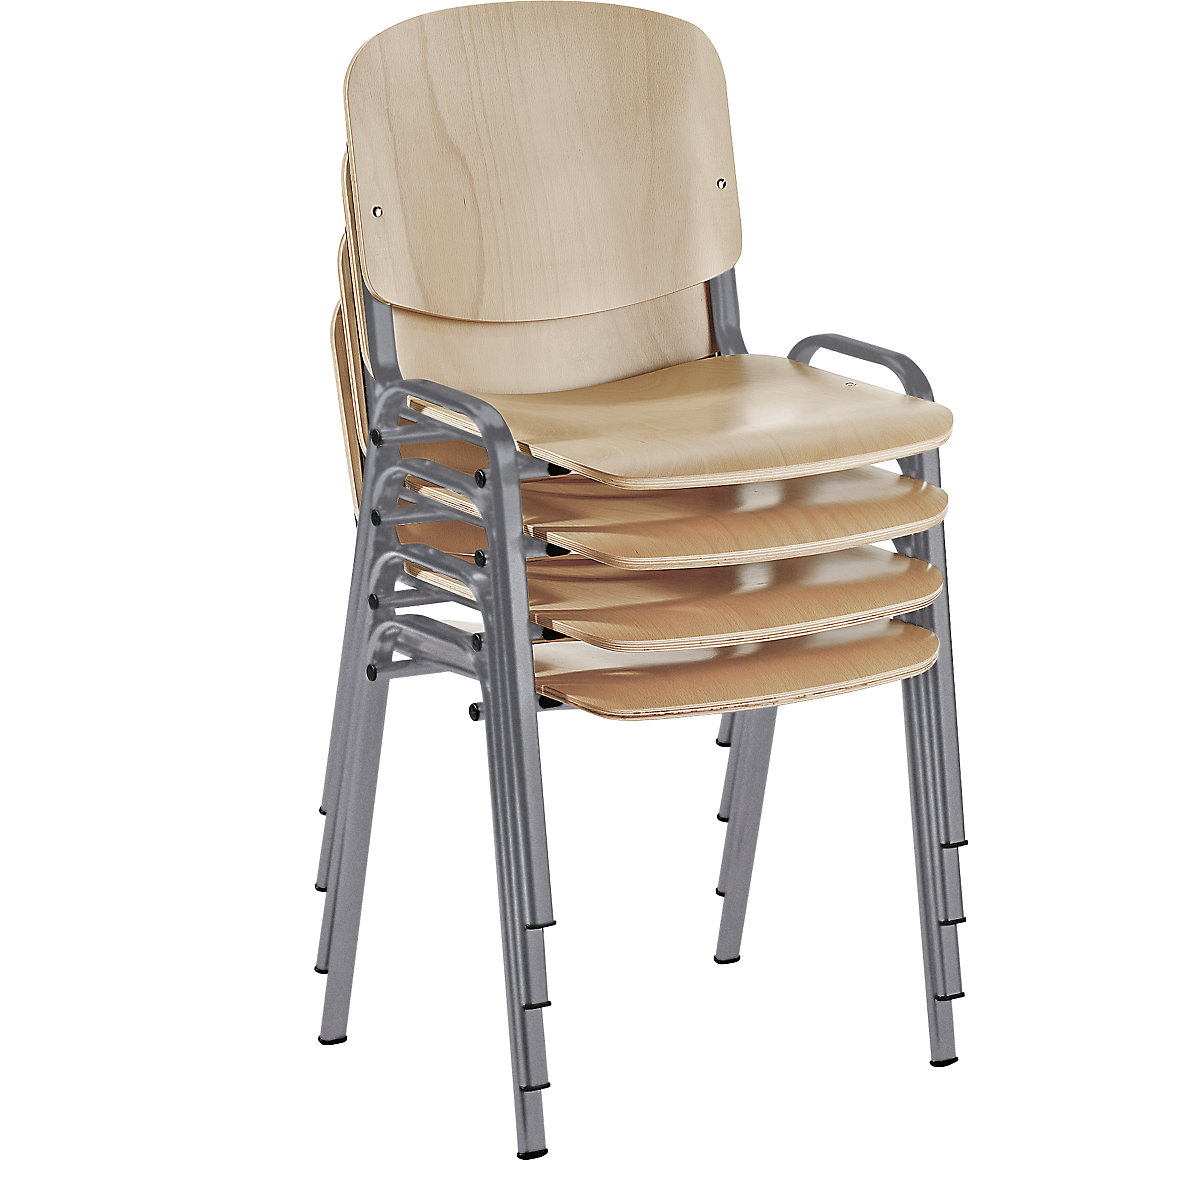 Krzesło do ustawiania w stos, ergonomiczny kształt